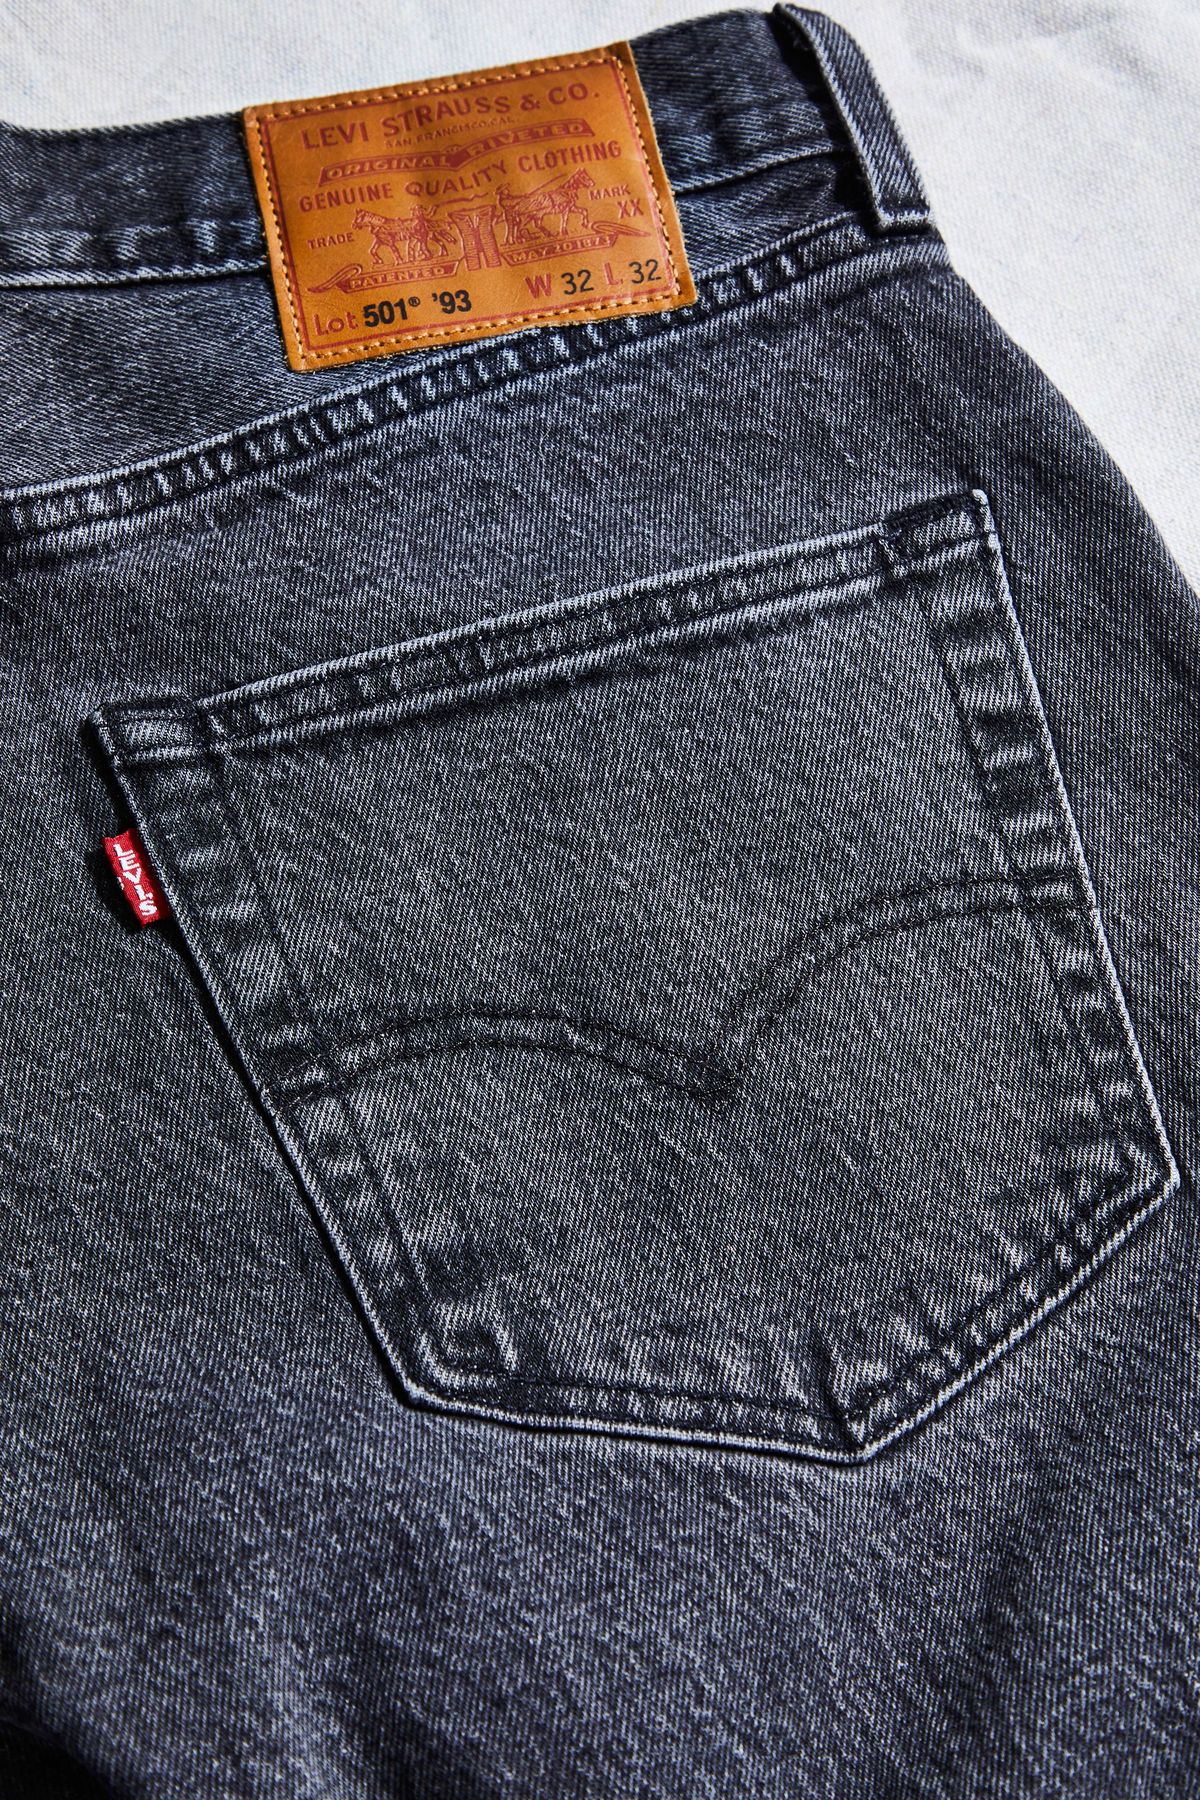 experimenteel Dekking Gedeeltelijk Levi's 501 '93 Jeans Review and Endorsement